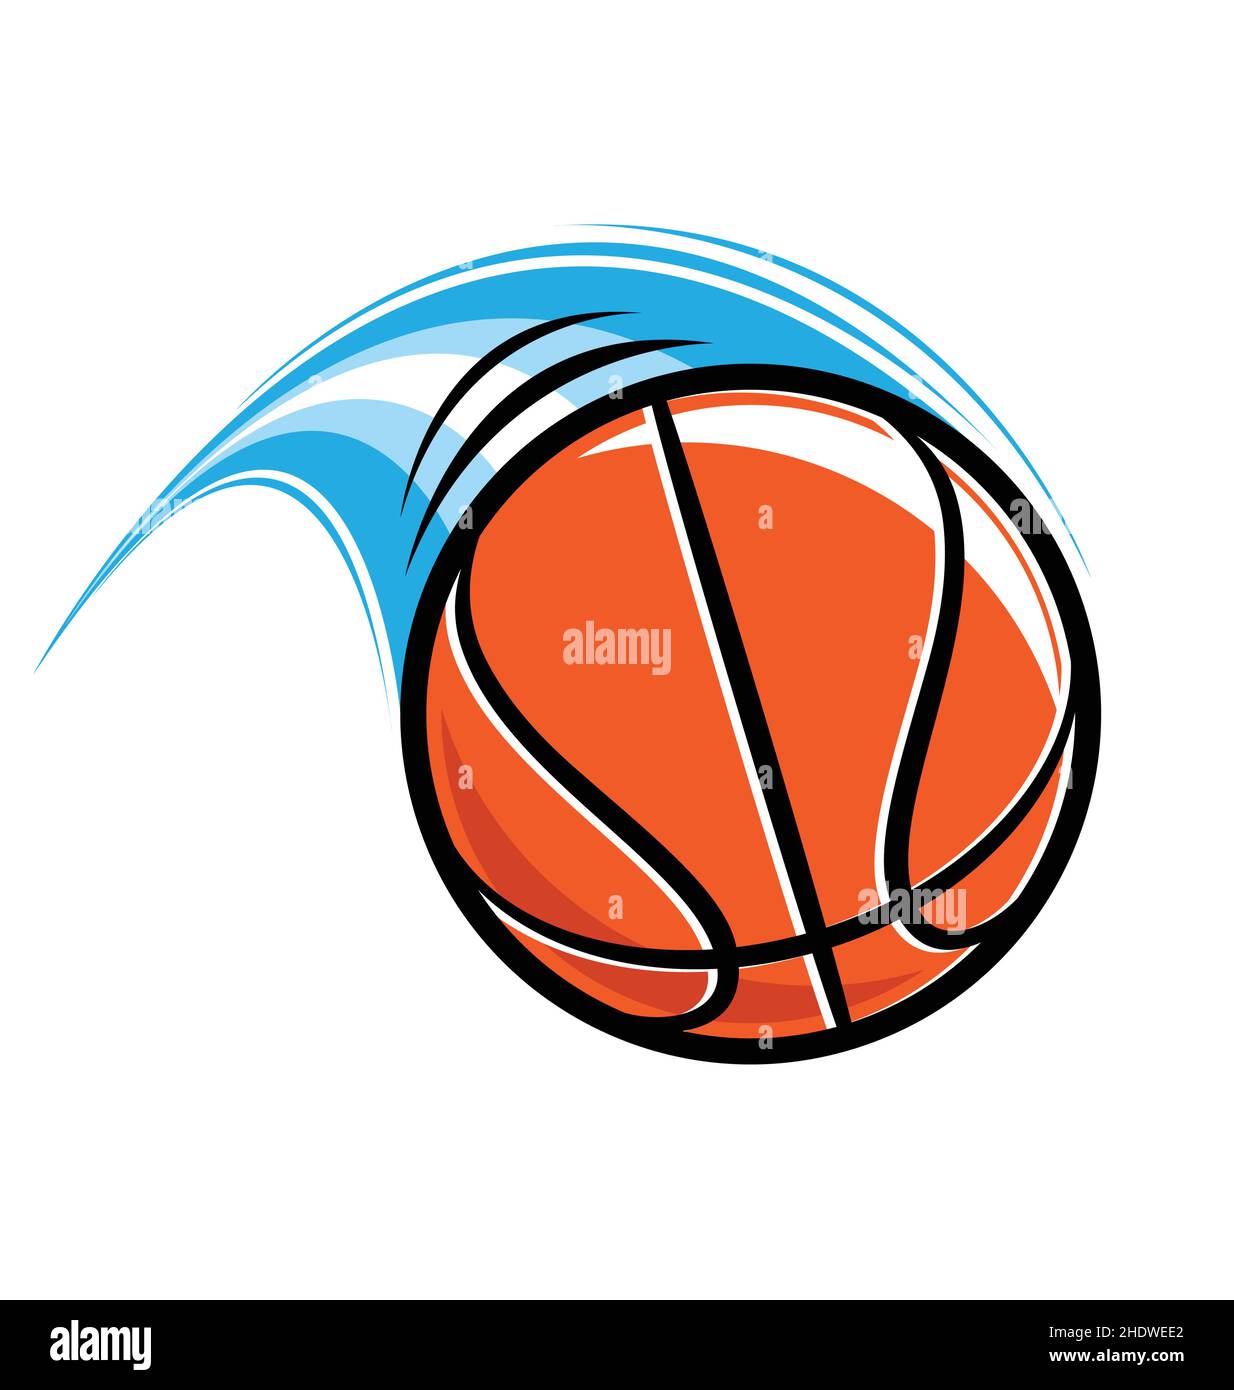 rápido vuelo de baloncesto naranja en movimiento con raya azul aislado sobre fondo blanco Ilustración del Vector